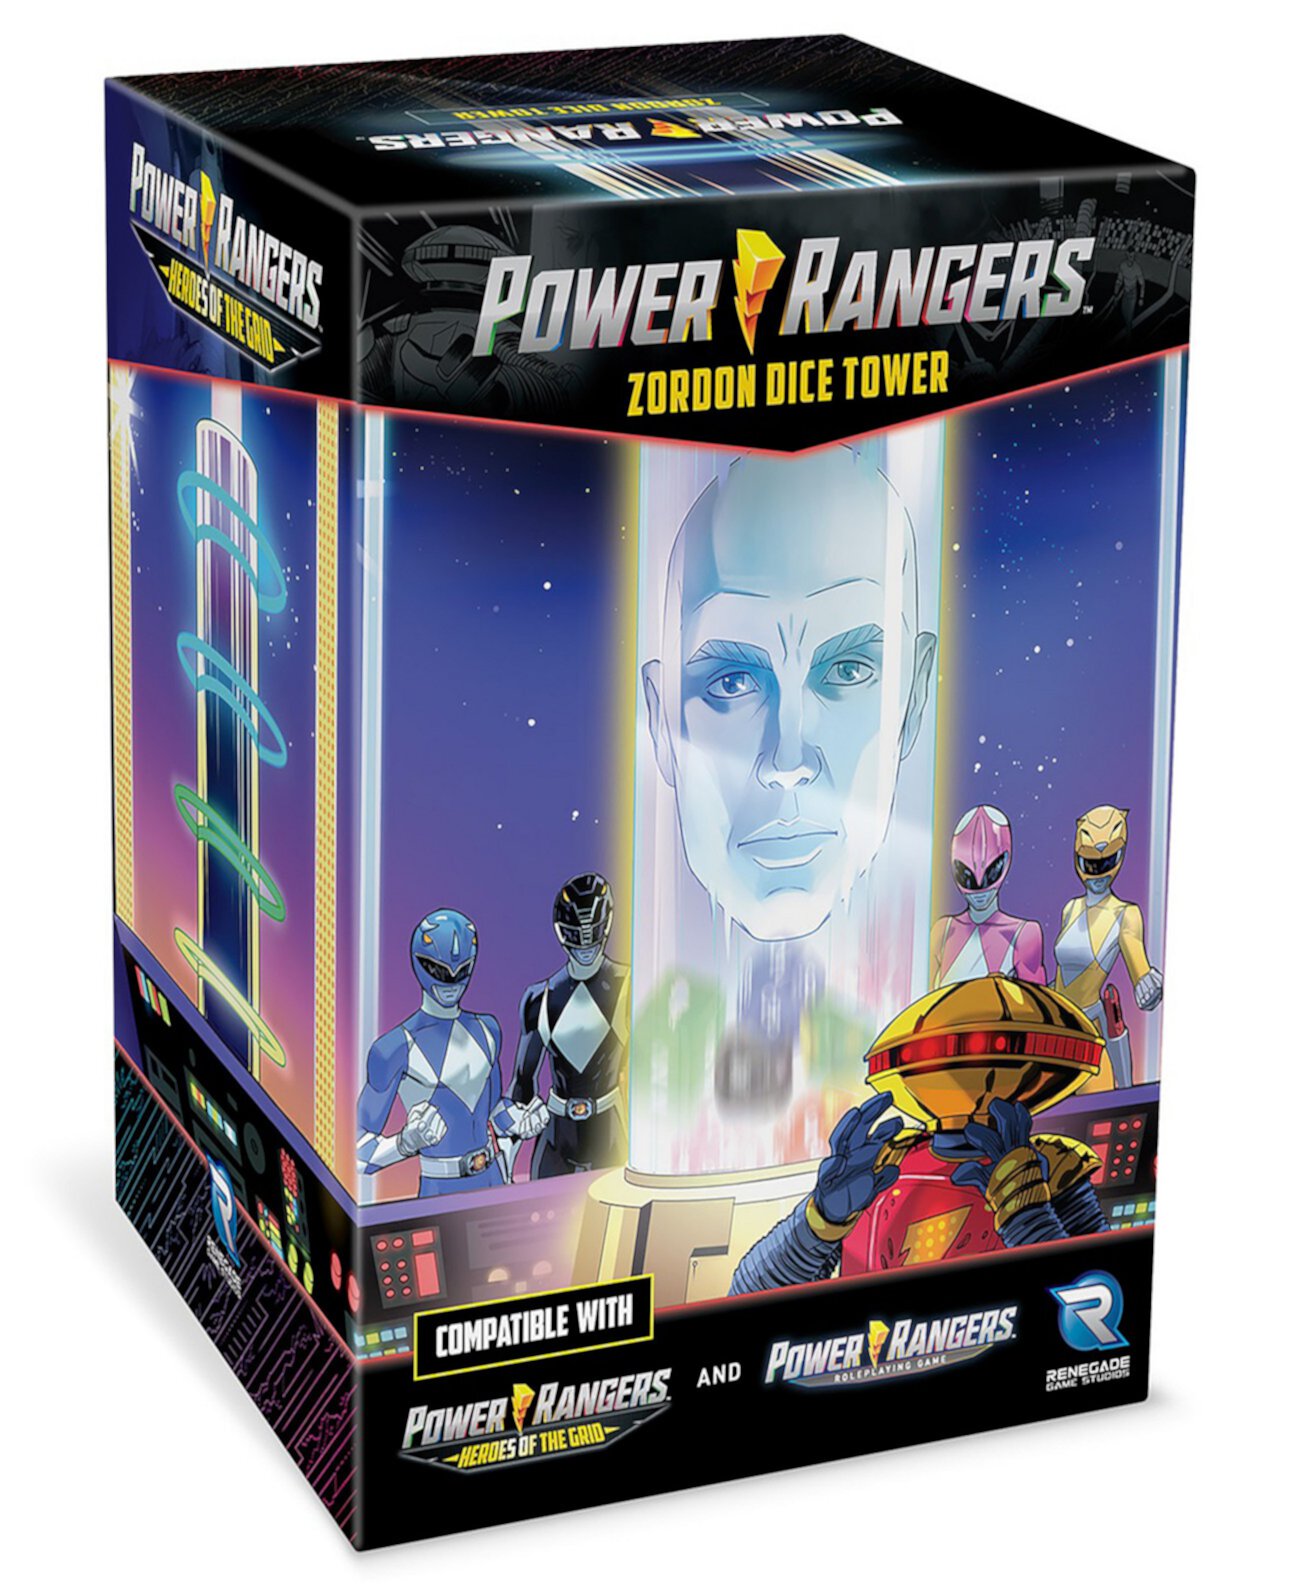 Power Rangers Zordon Dice Tower Экран Gm, совместимый с ролевой игрой Power Rangers Power Rangers Heroes of The Grid, игровой аксессуар Renegade Game Studios